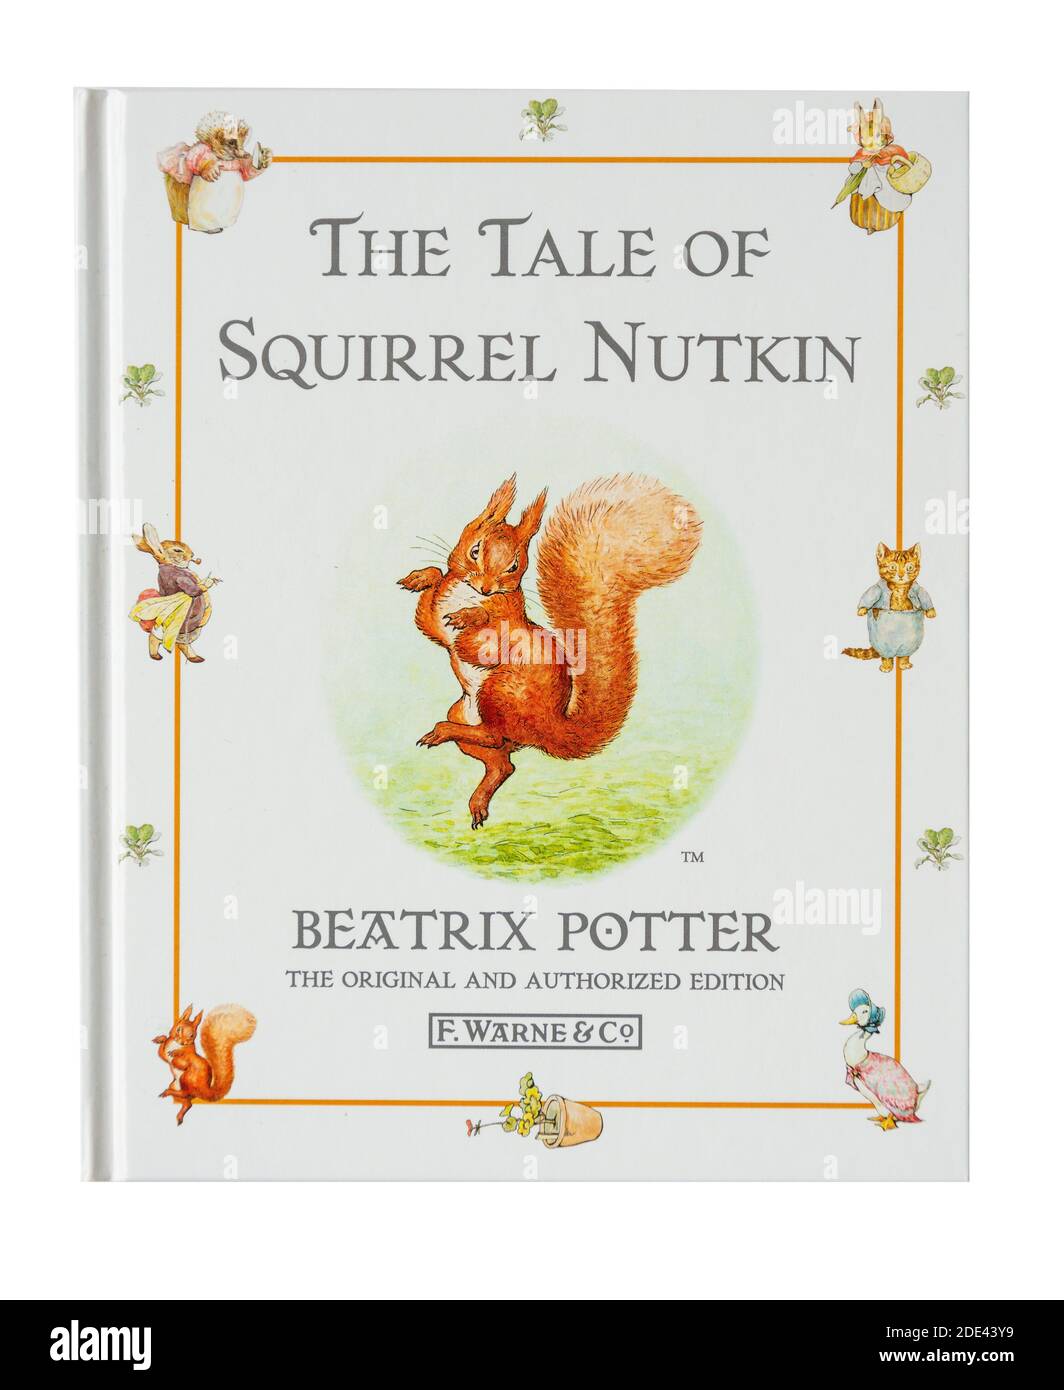 Livre pour enfants « The Tale of Squirrel Nutkin » de Beatrix Potter, Grand Londres, Angleterre, Royaume-Uni Banque D'Images